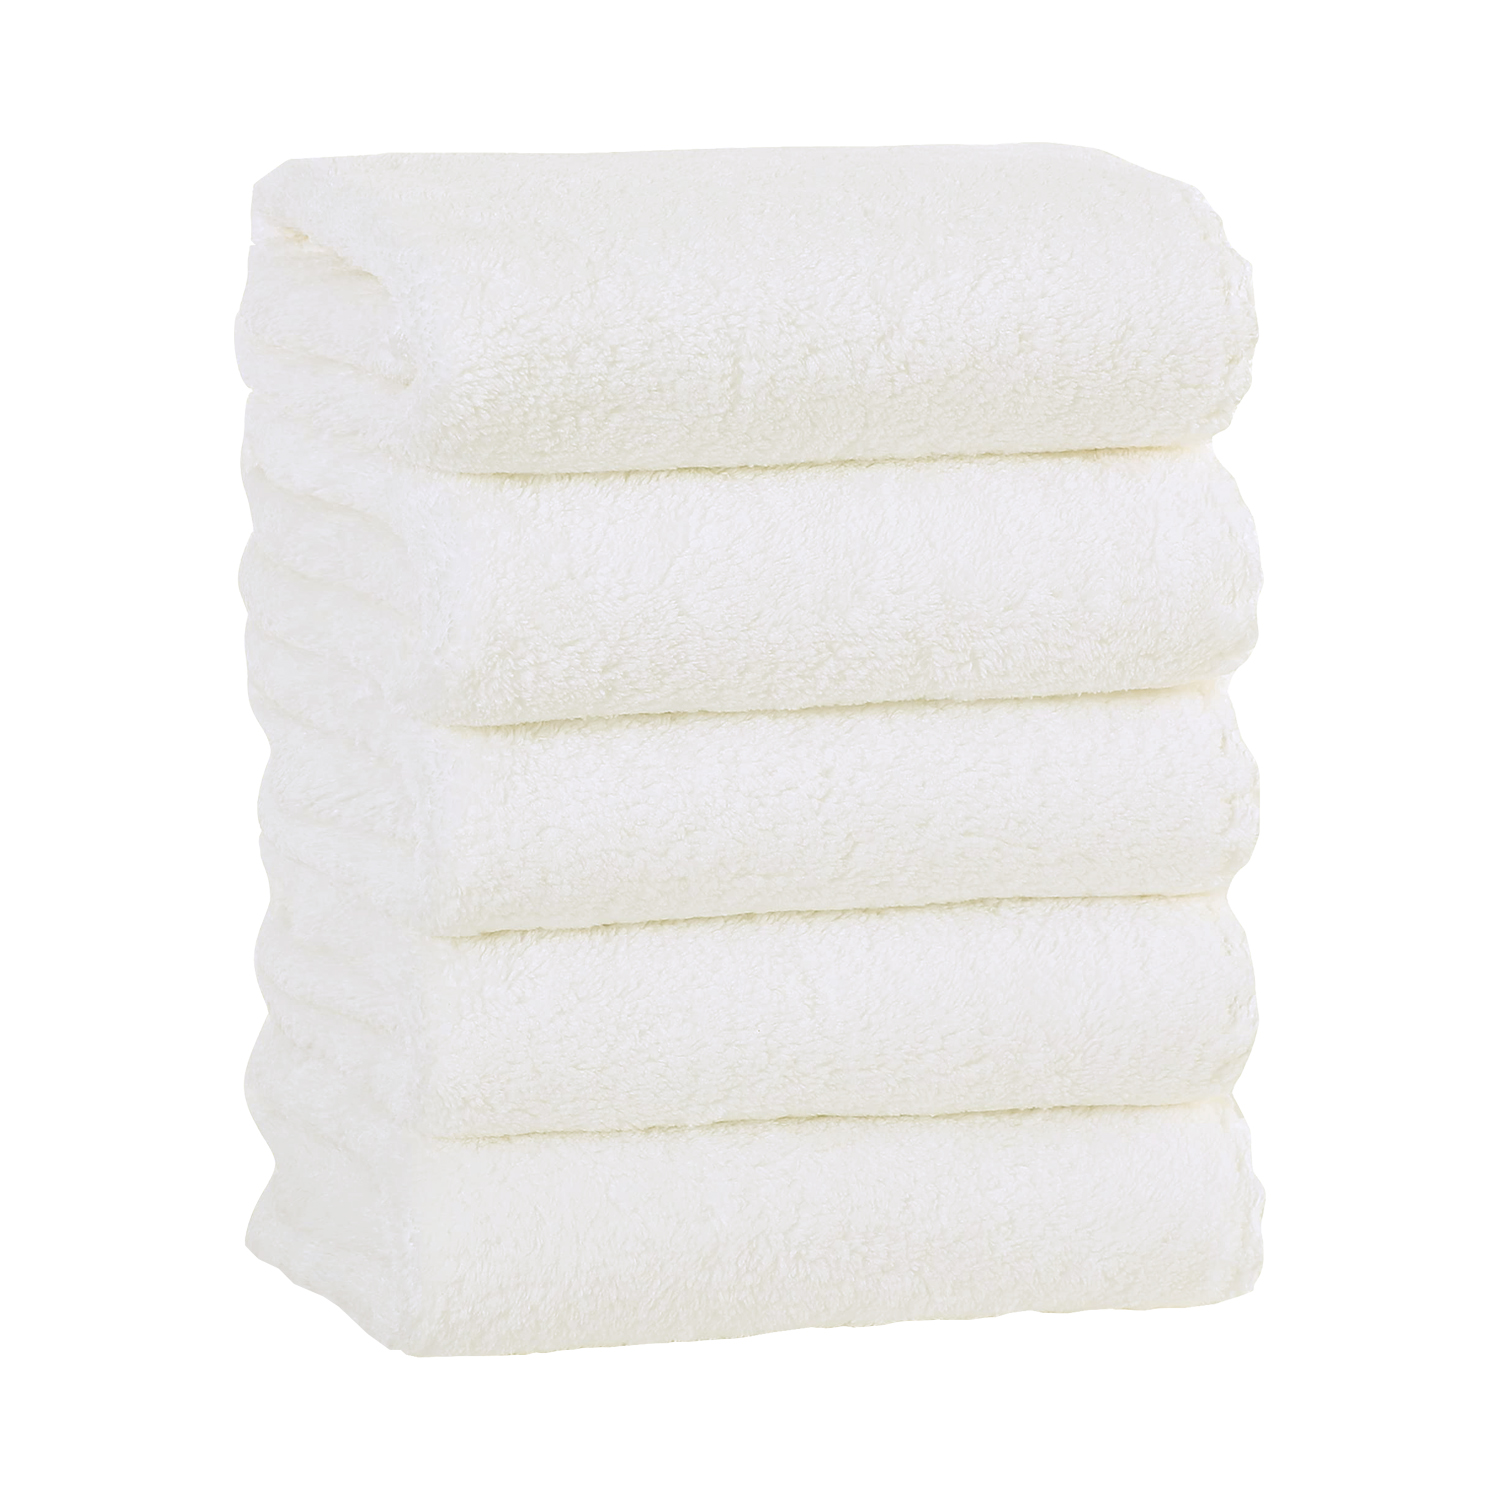  MOONQUEEN - Juego de toallas ultra suaves y de secado rápido, 2  toallas de baño, 2 toallas de mano, 2 toallas pequeñas, microfibra coral  altamente absorbente, para baño, yoga, etc (aguamarina